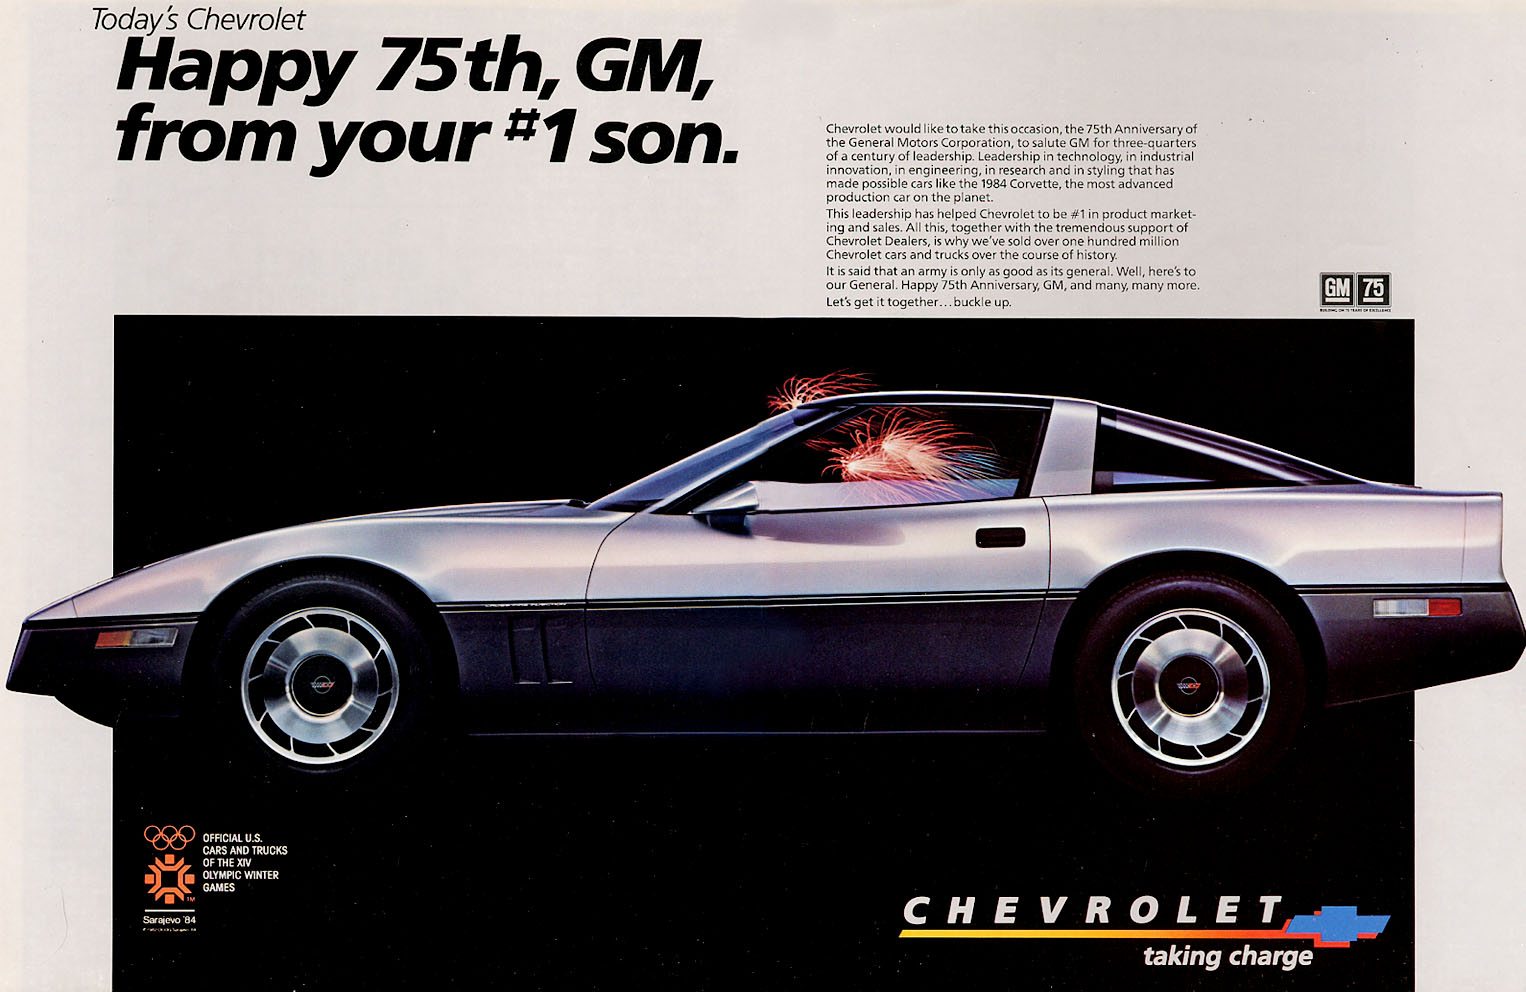 1984 Corvette Ad